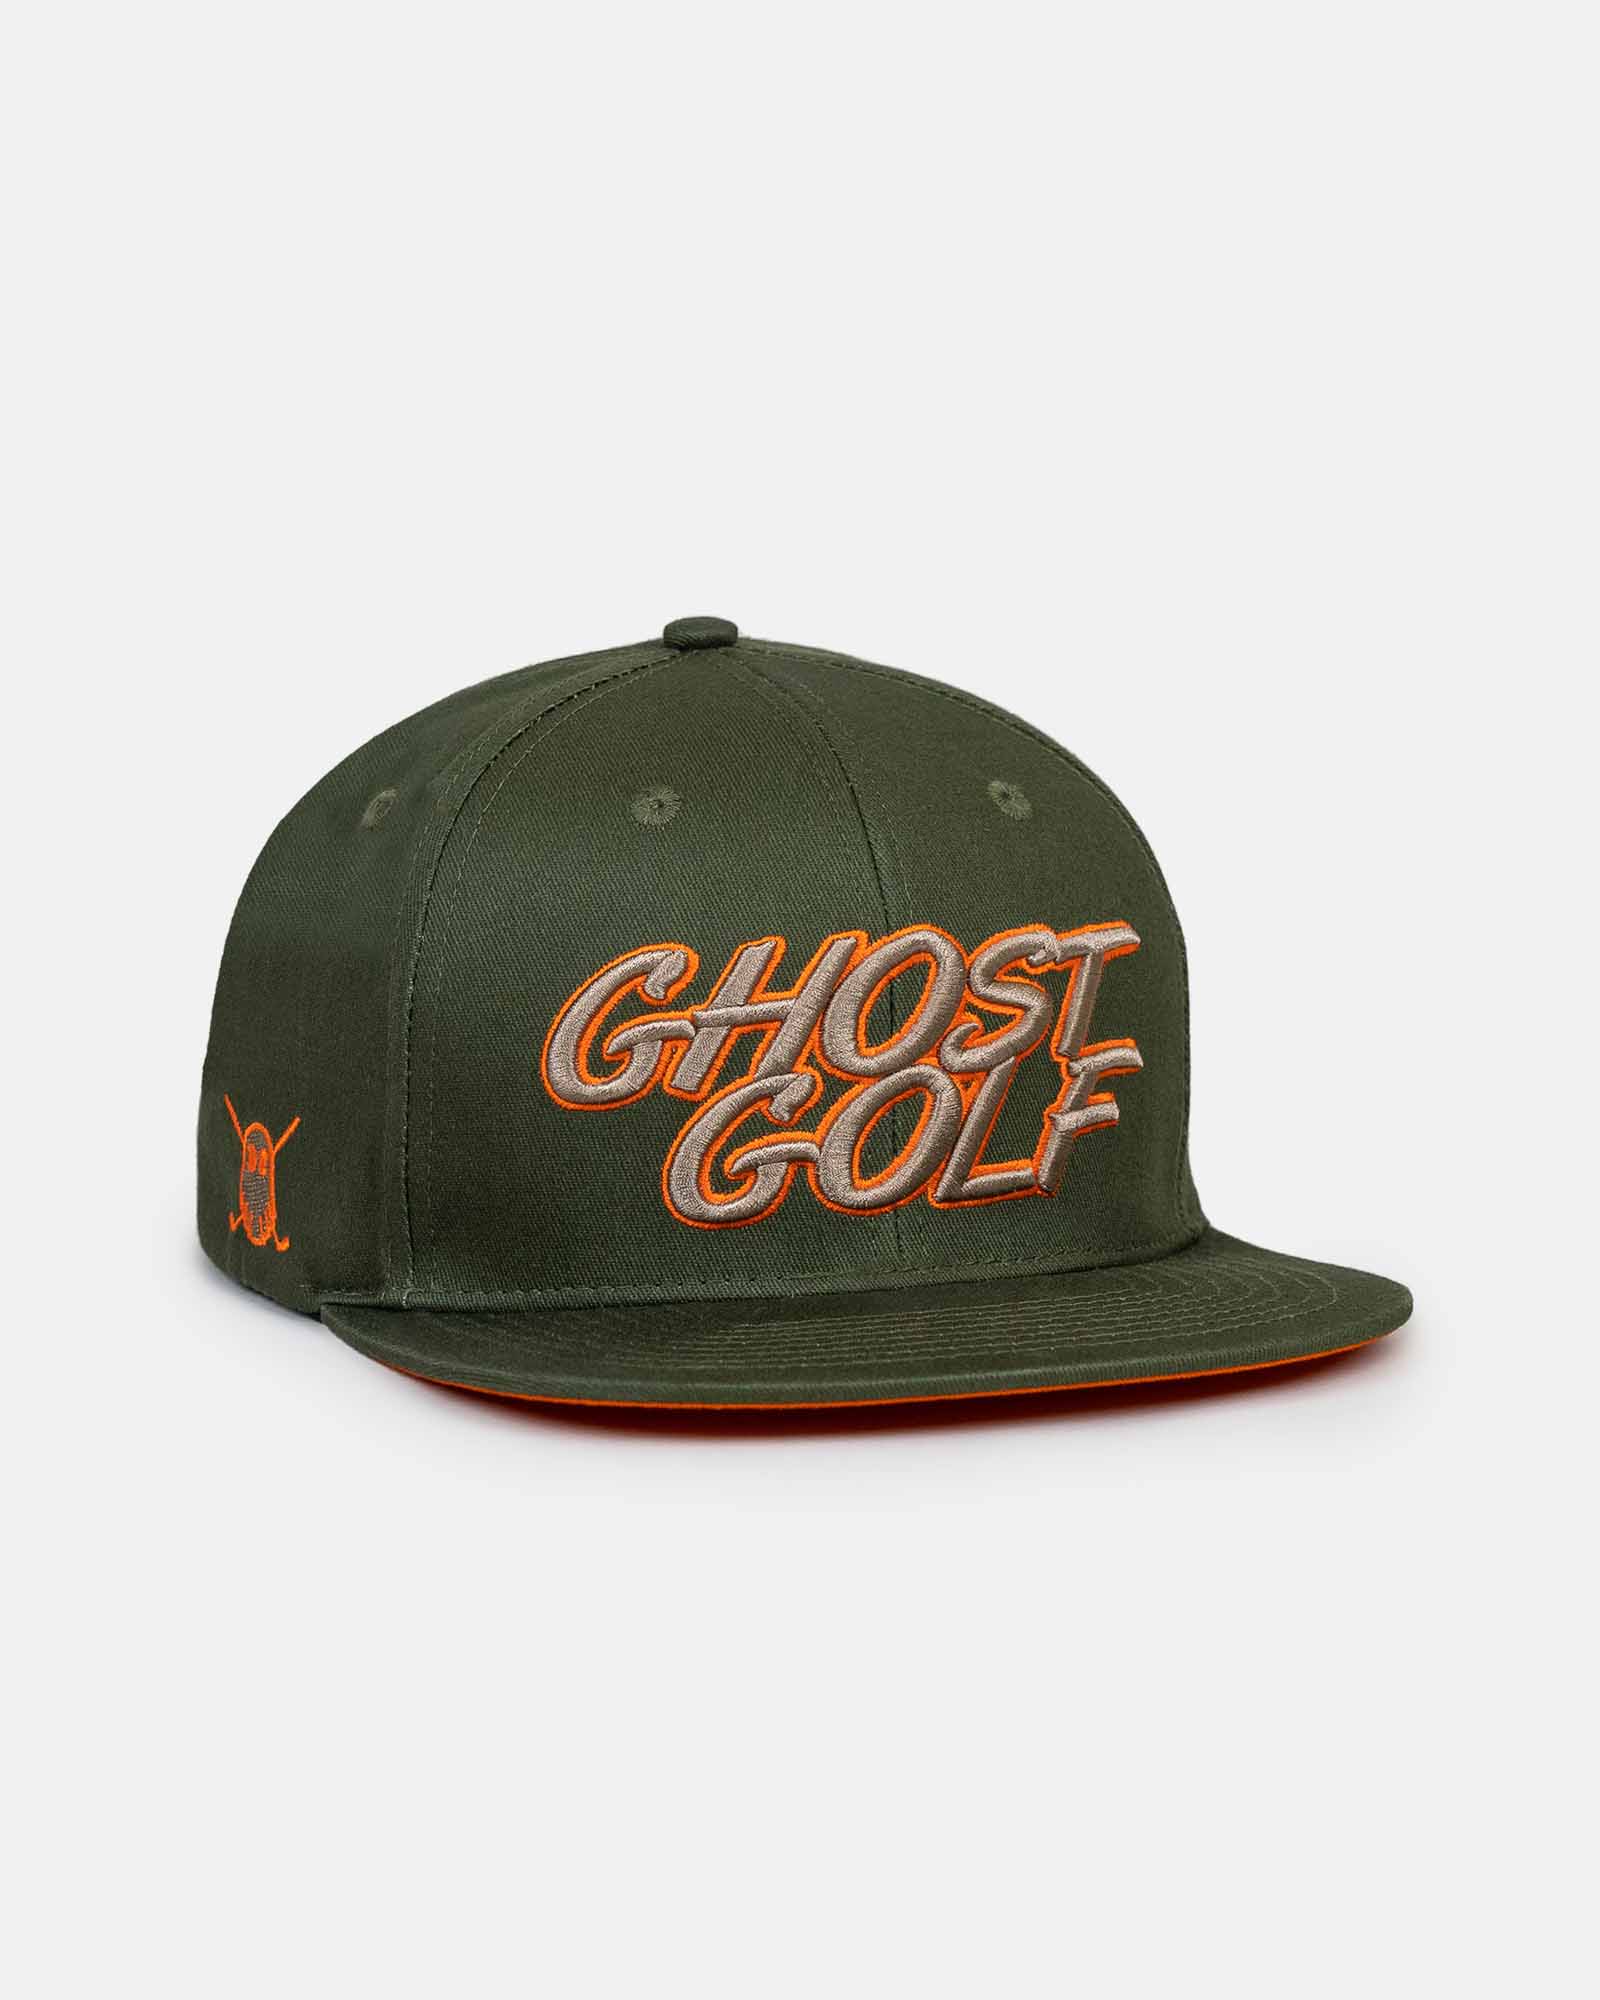 Ghost Golf Club | SNAPBACK GOLF HAT